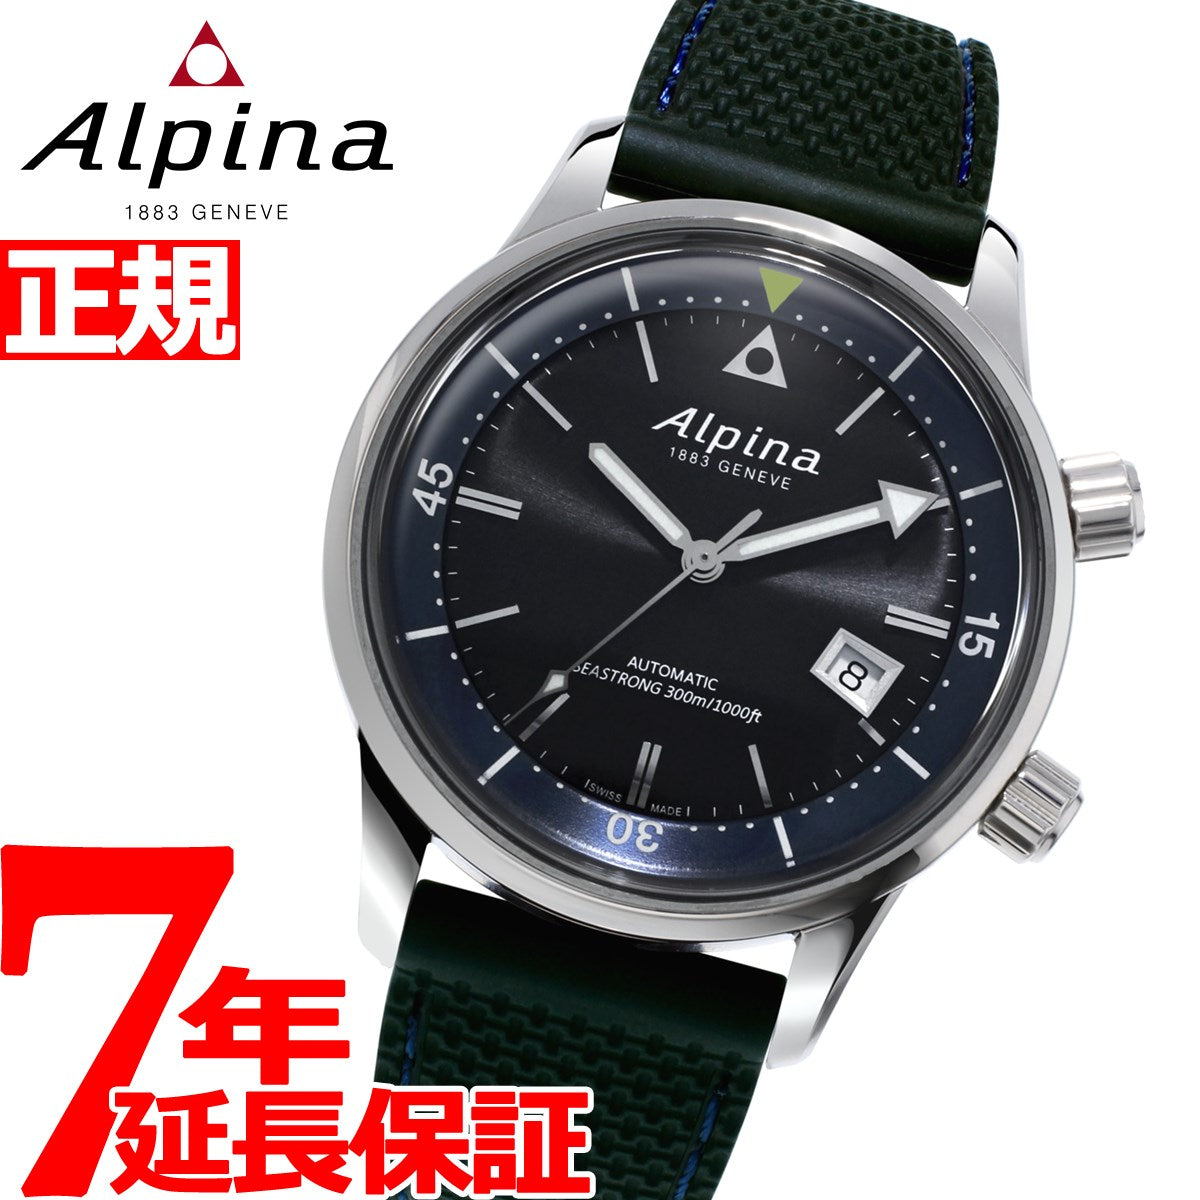 【60回無金利ローン】アルピナ ALPINA シーストロング ダイバー 300 ヘリテージ 自動巻き 腕時計 メンズ SEASTRONG  AL-525G4H6